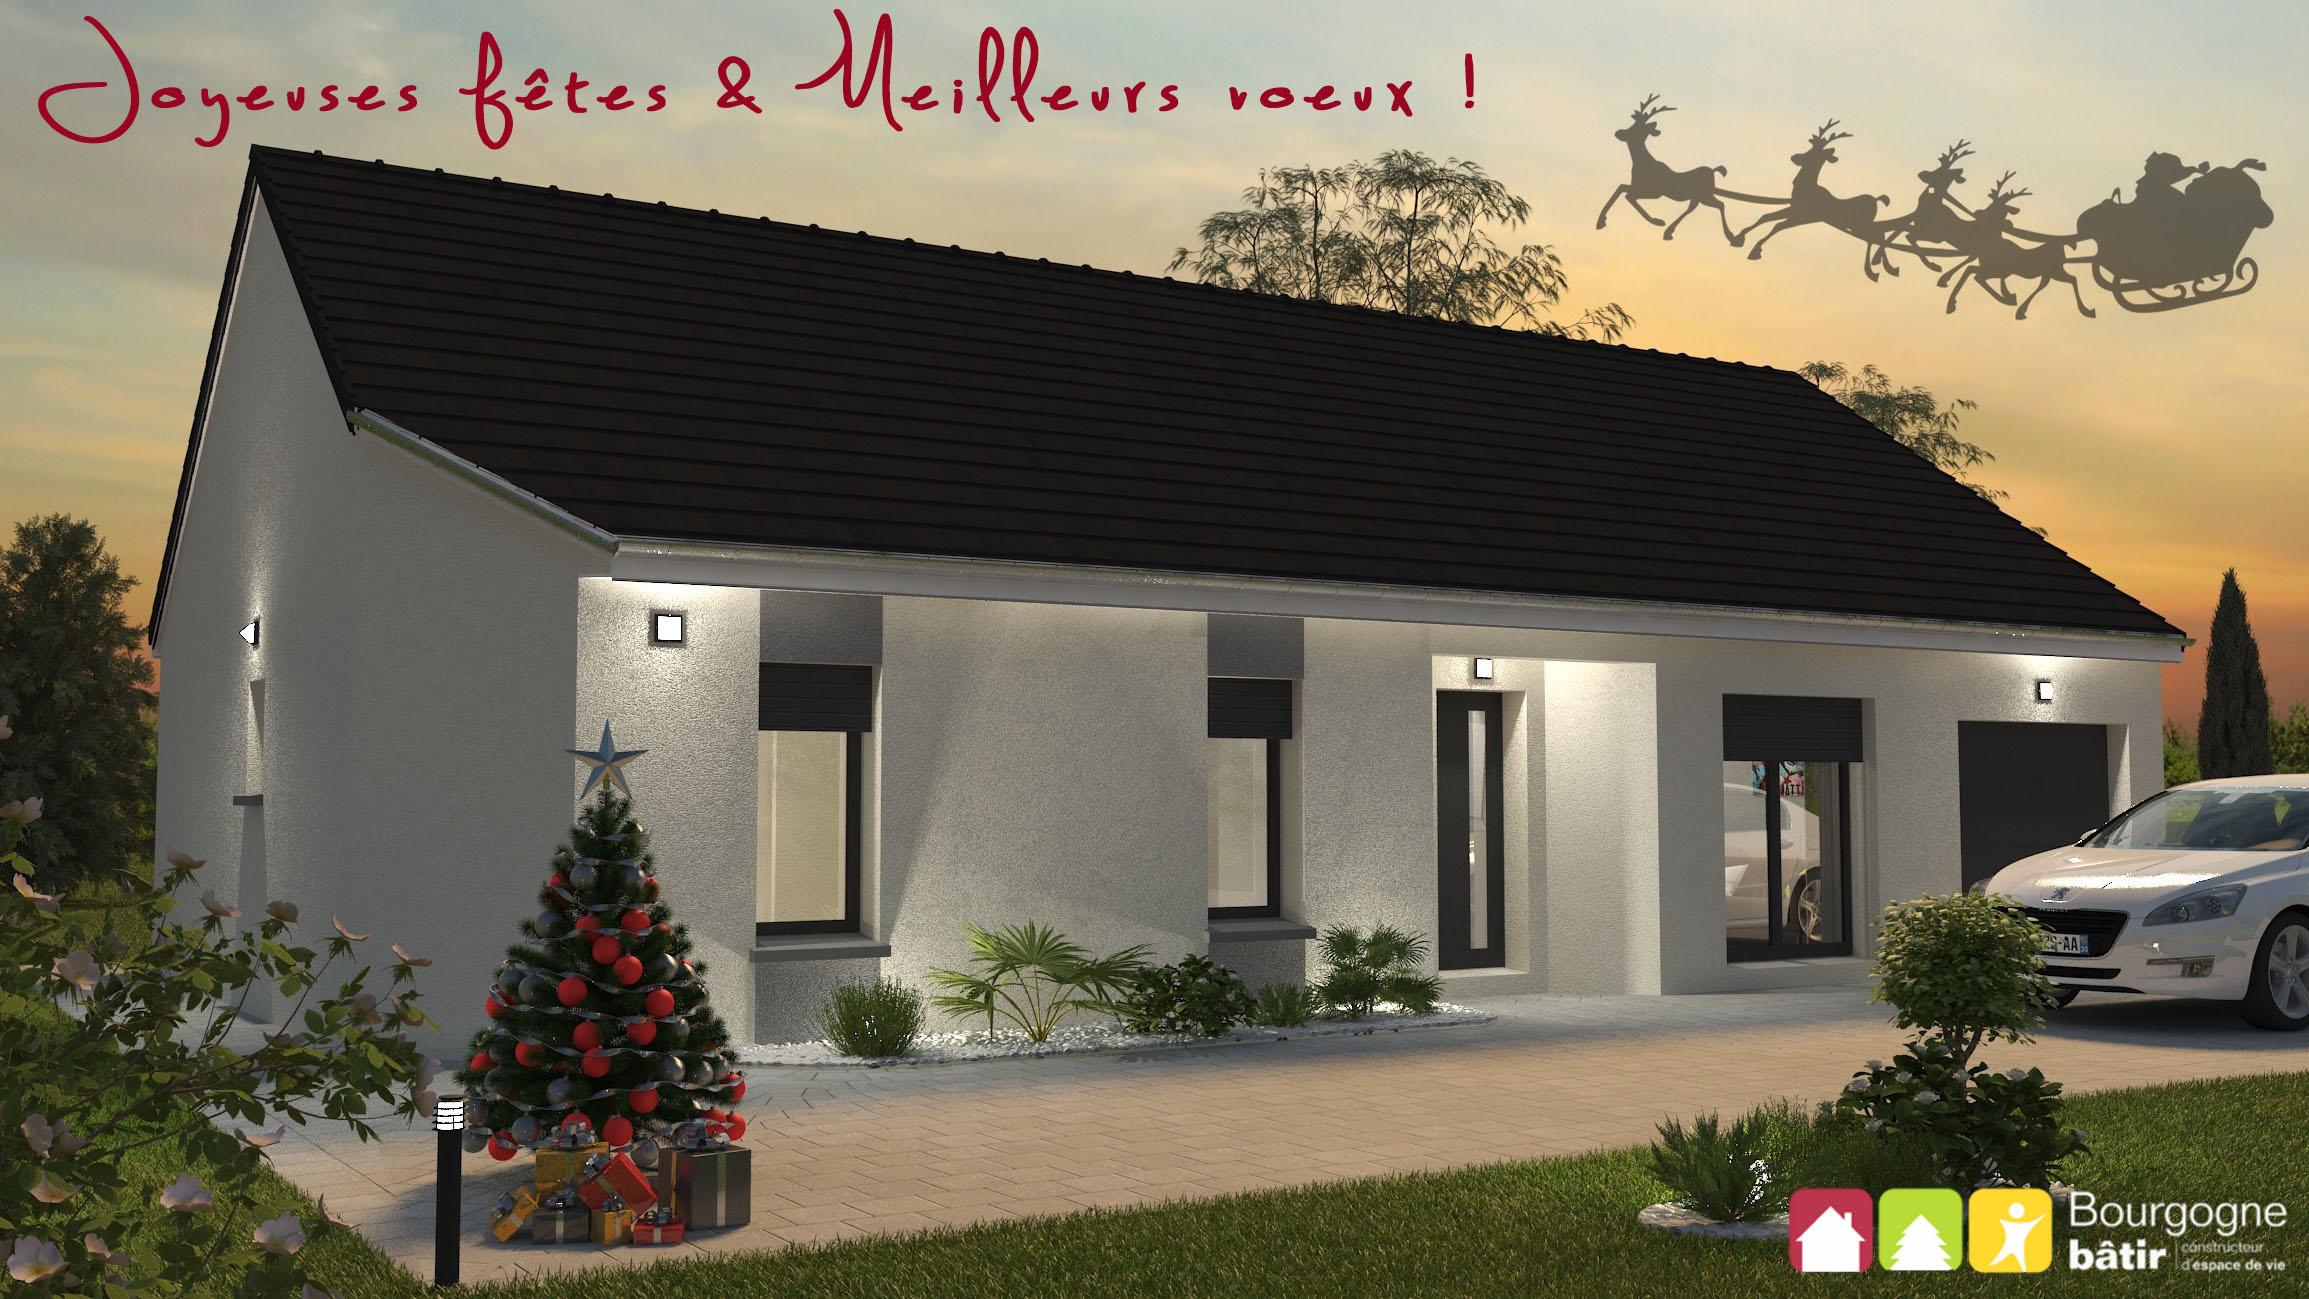 Joyeux Noël - bourgogne bâtir Saône et Loire Chalon sur Saône